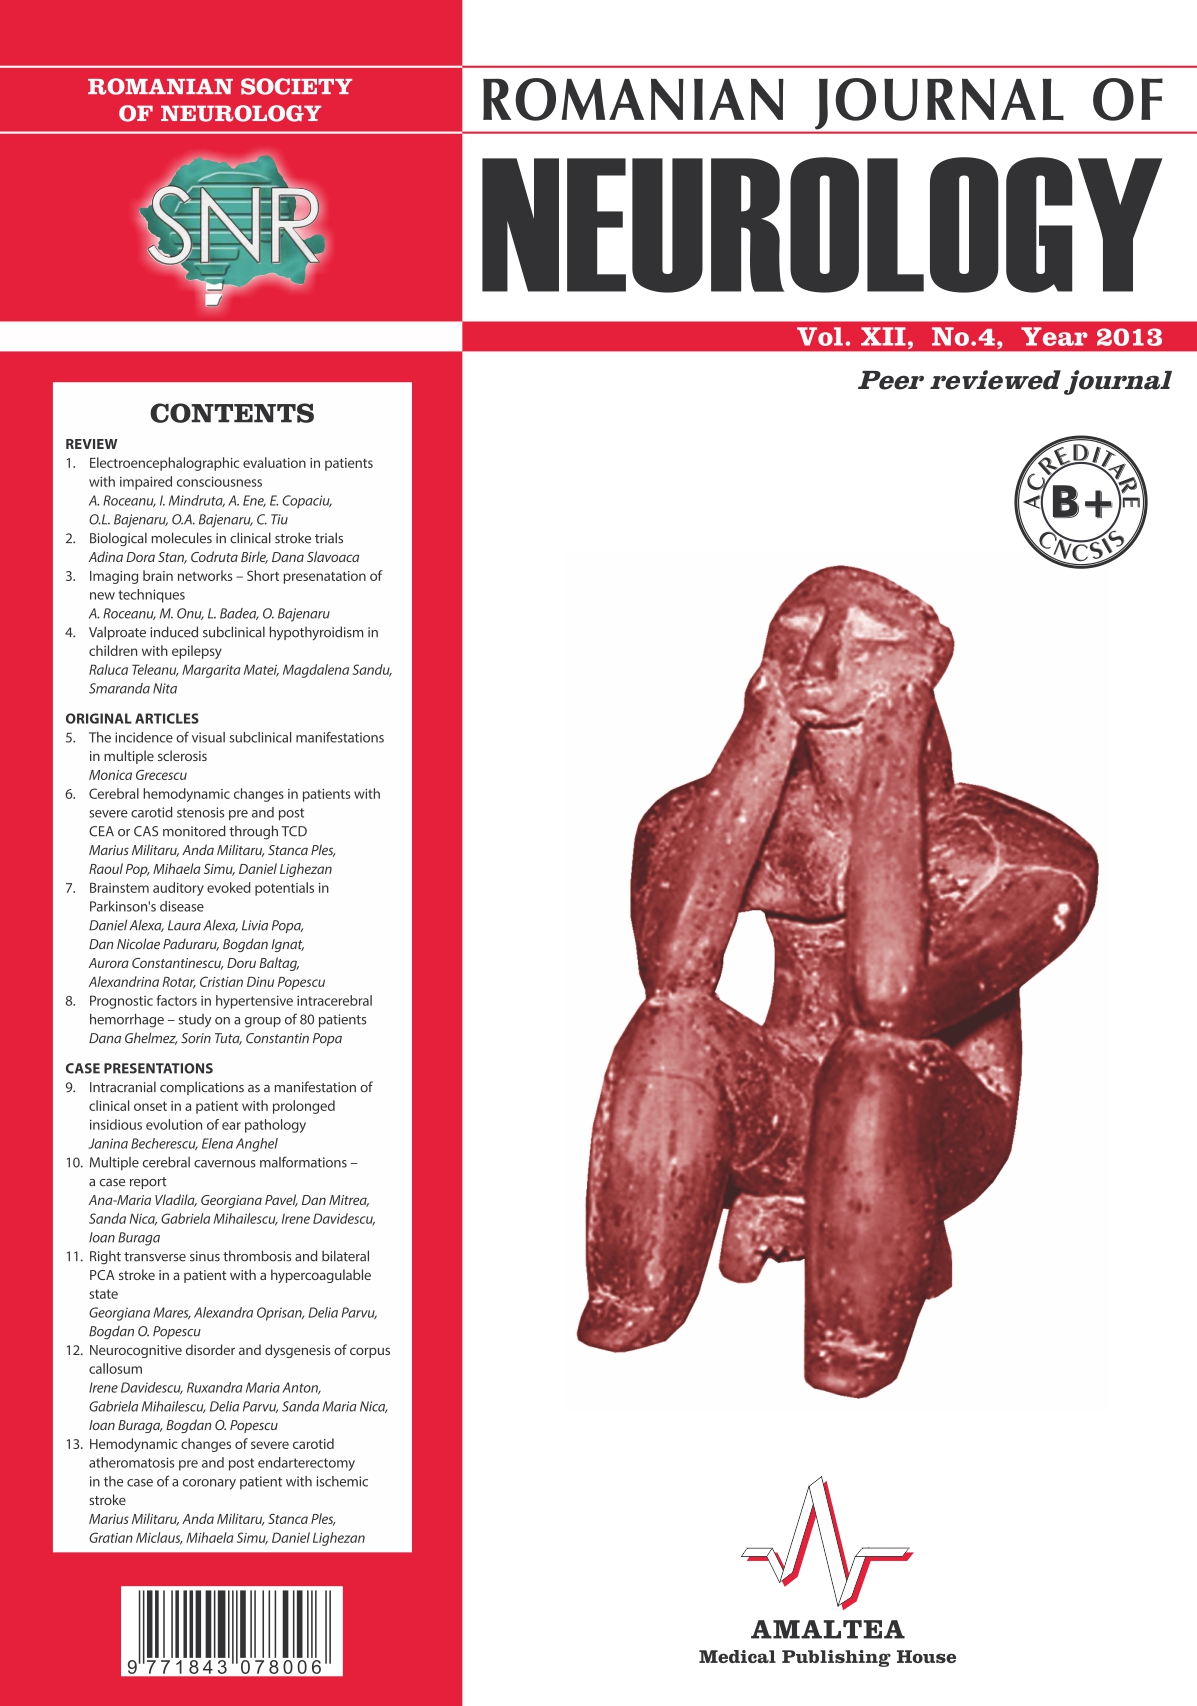 Romanian Journal of Neurology, Volume XII, No. 4, 2013